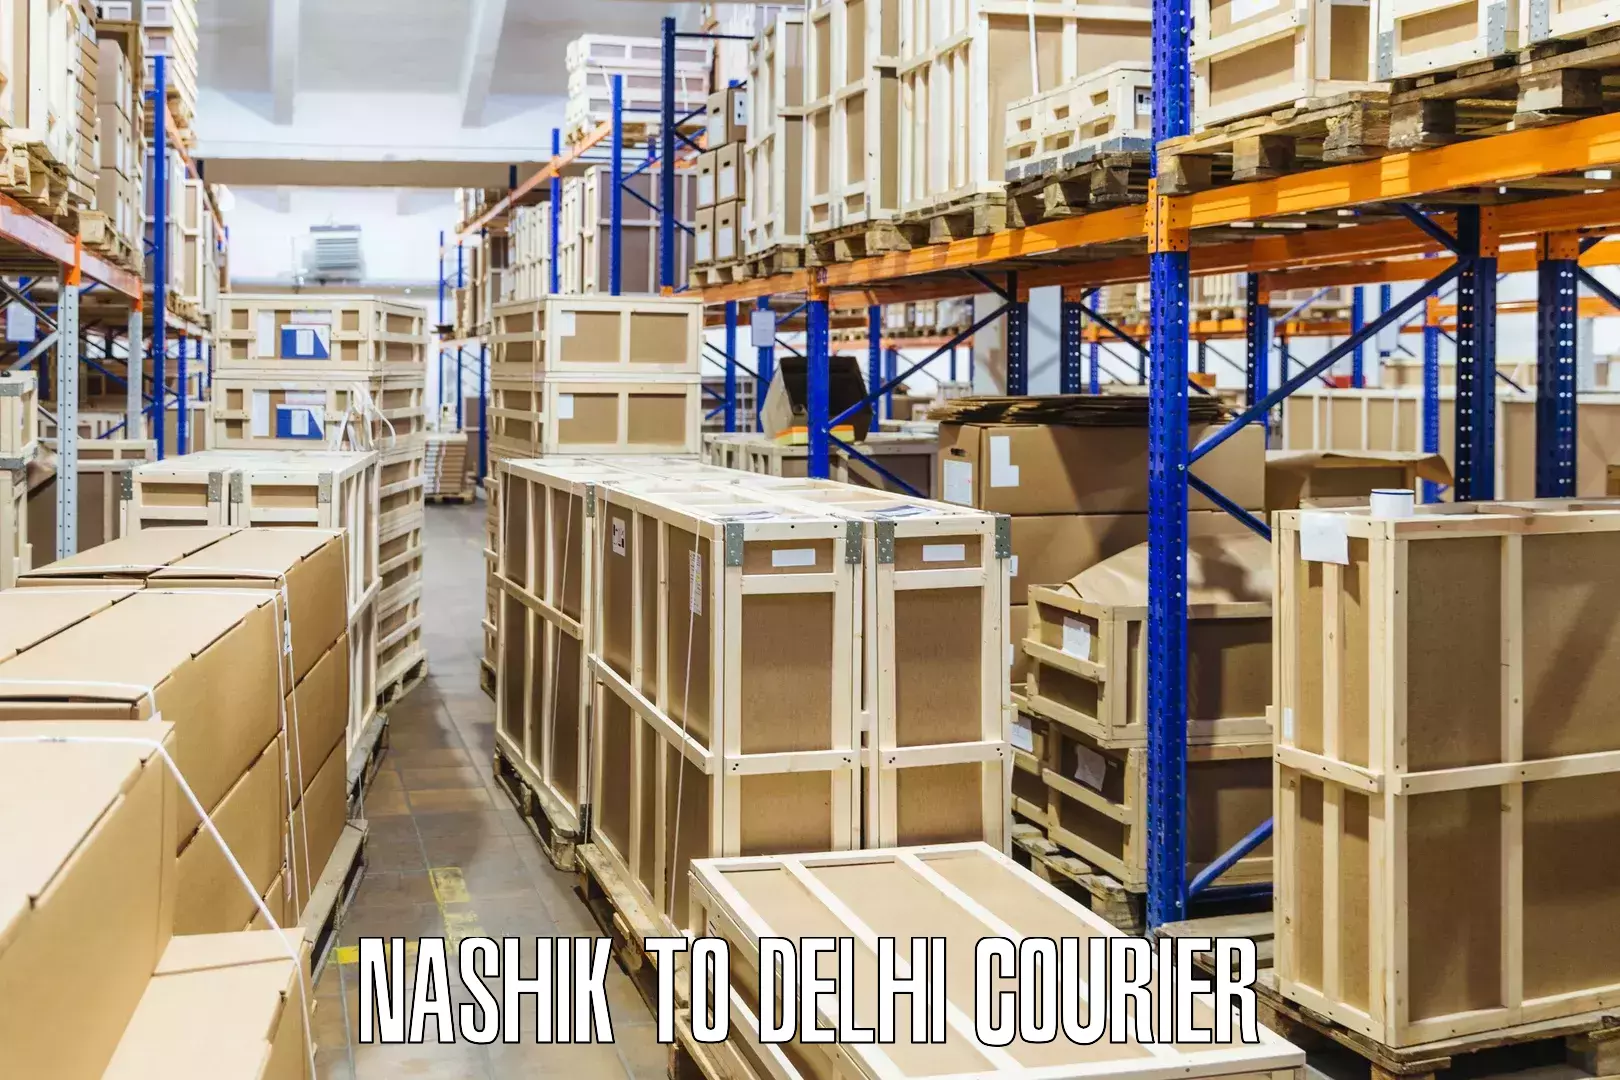 Advanced shipping technology Nashik to Guru Gobind Singh Indraprastha University New Delhi